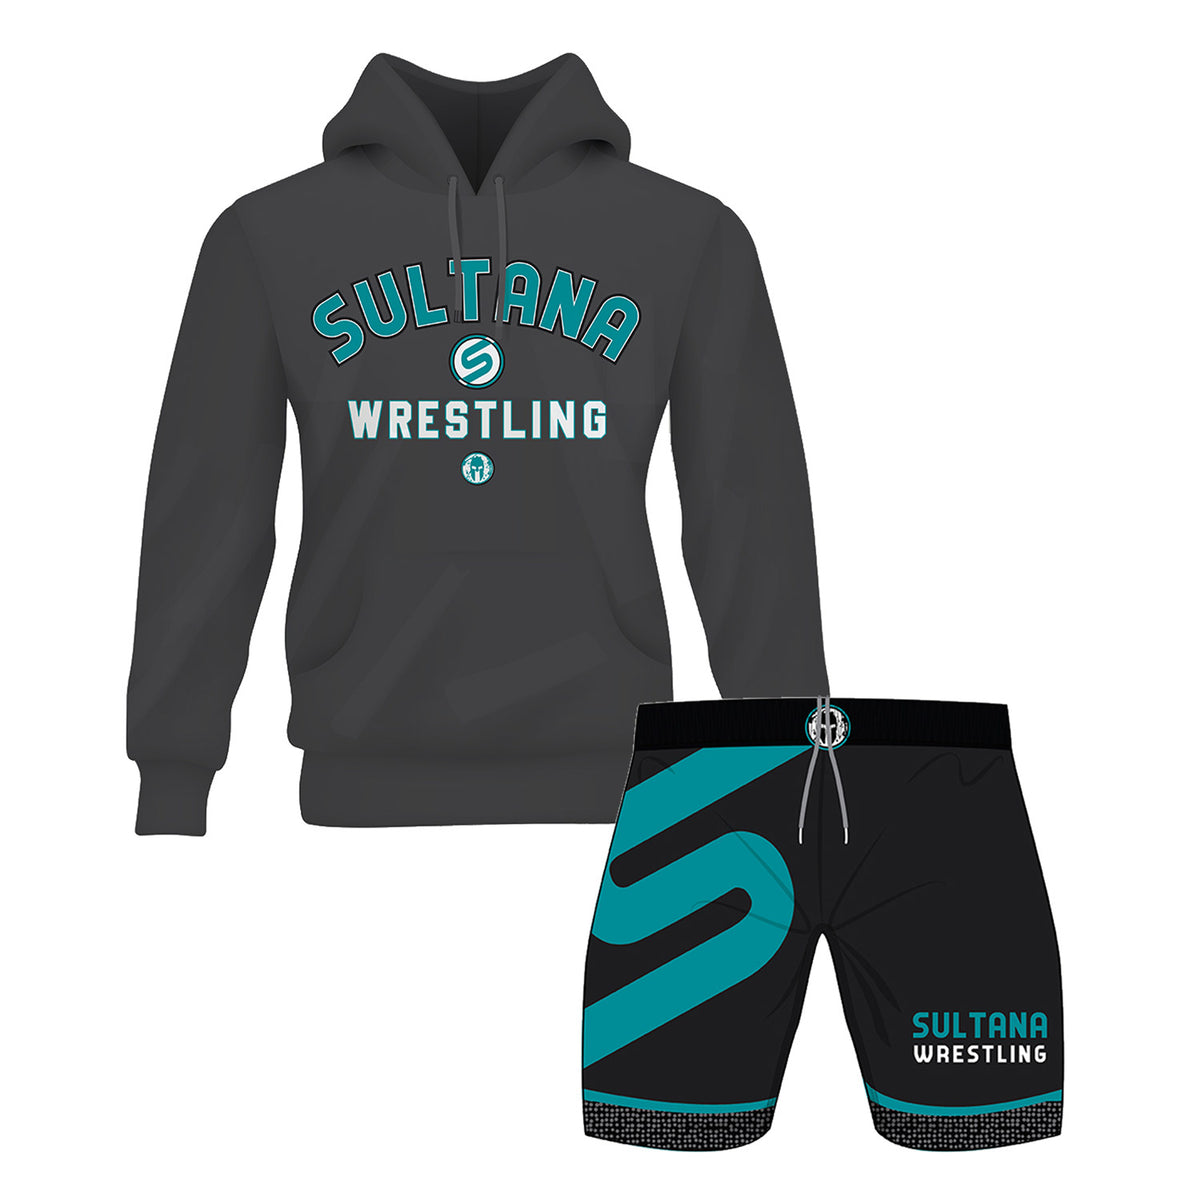 Sultana Wrestling Zip/Hoodie & Shorts Bundle